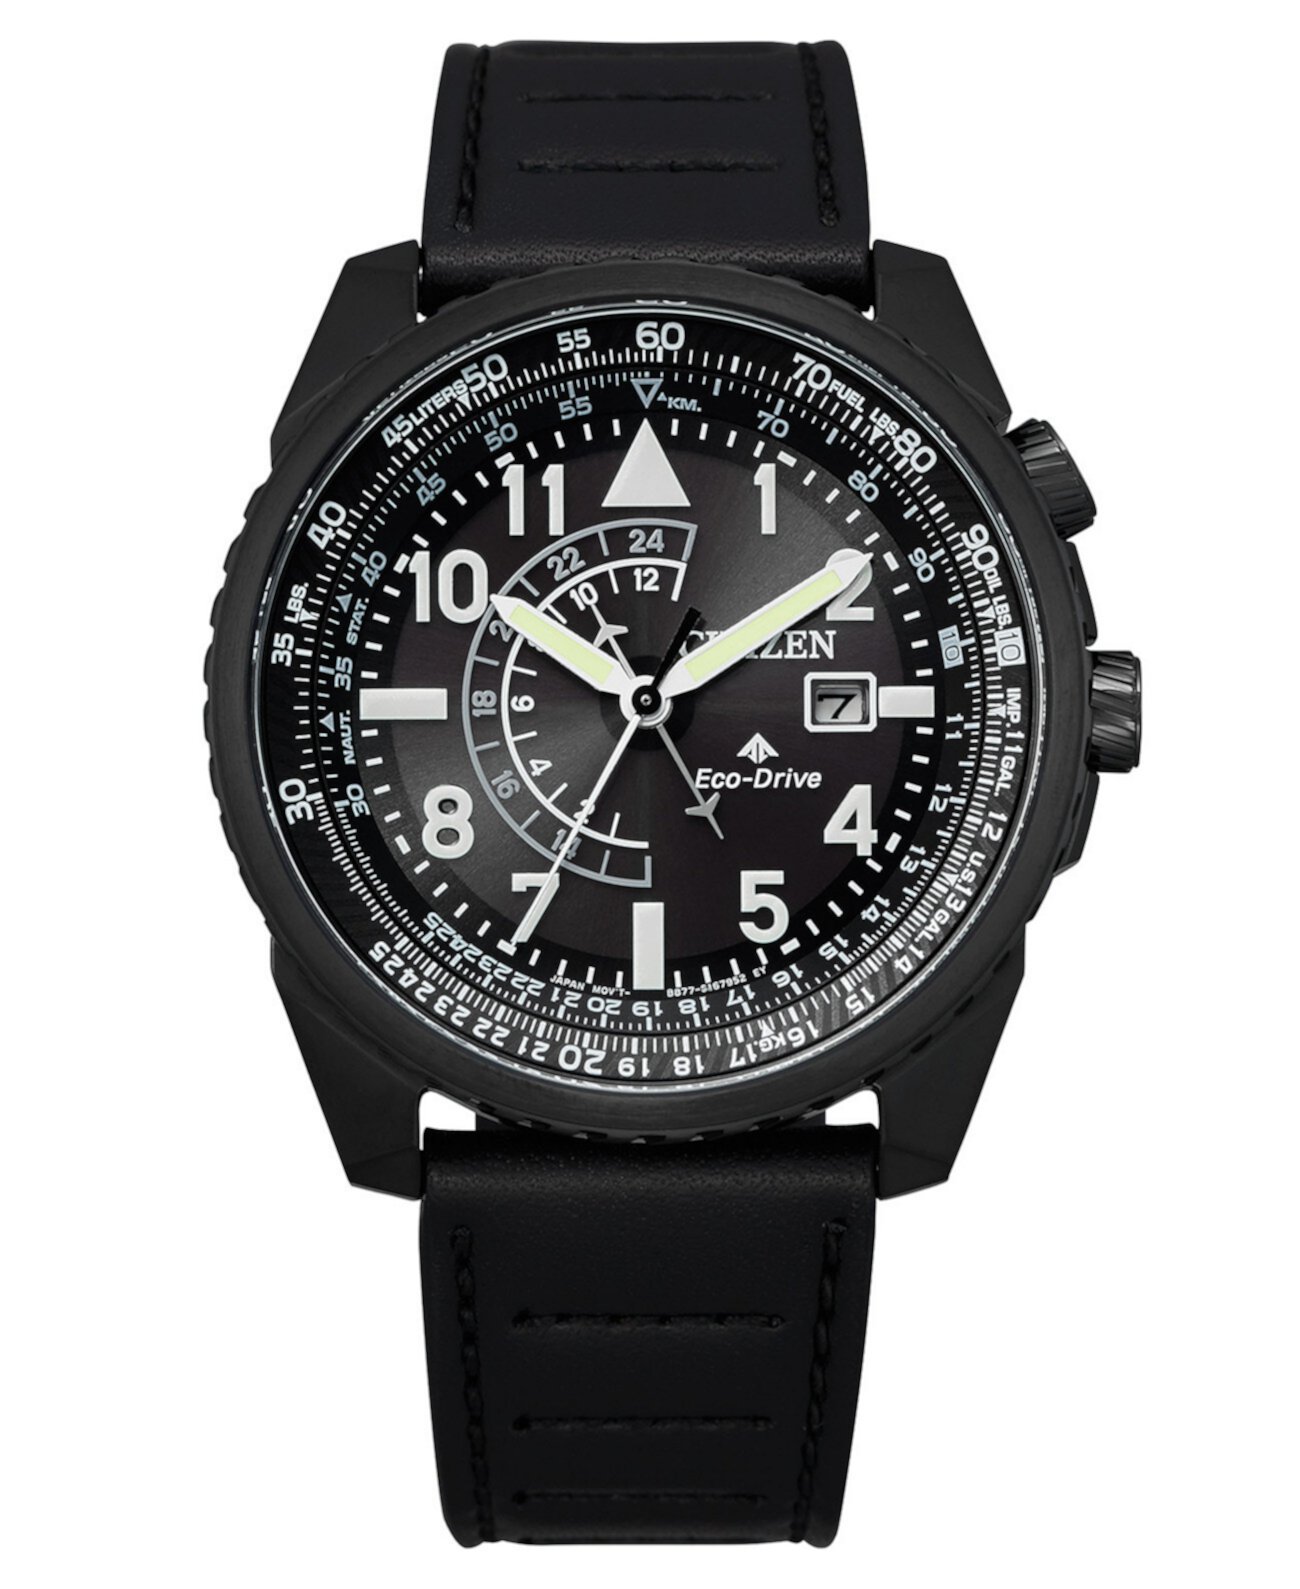 Мужские часы Eco-Drive Promaster с черным кожаным ремешком, 42 мм Citizen